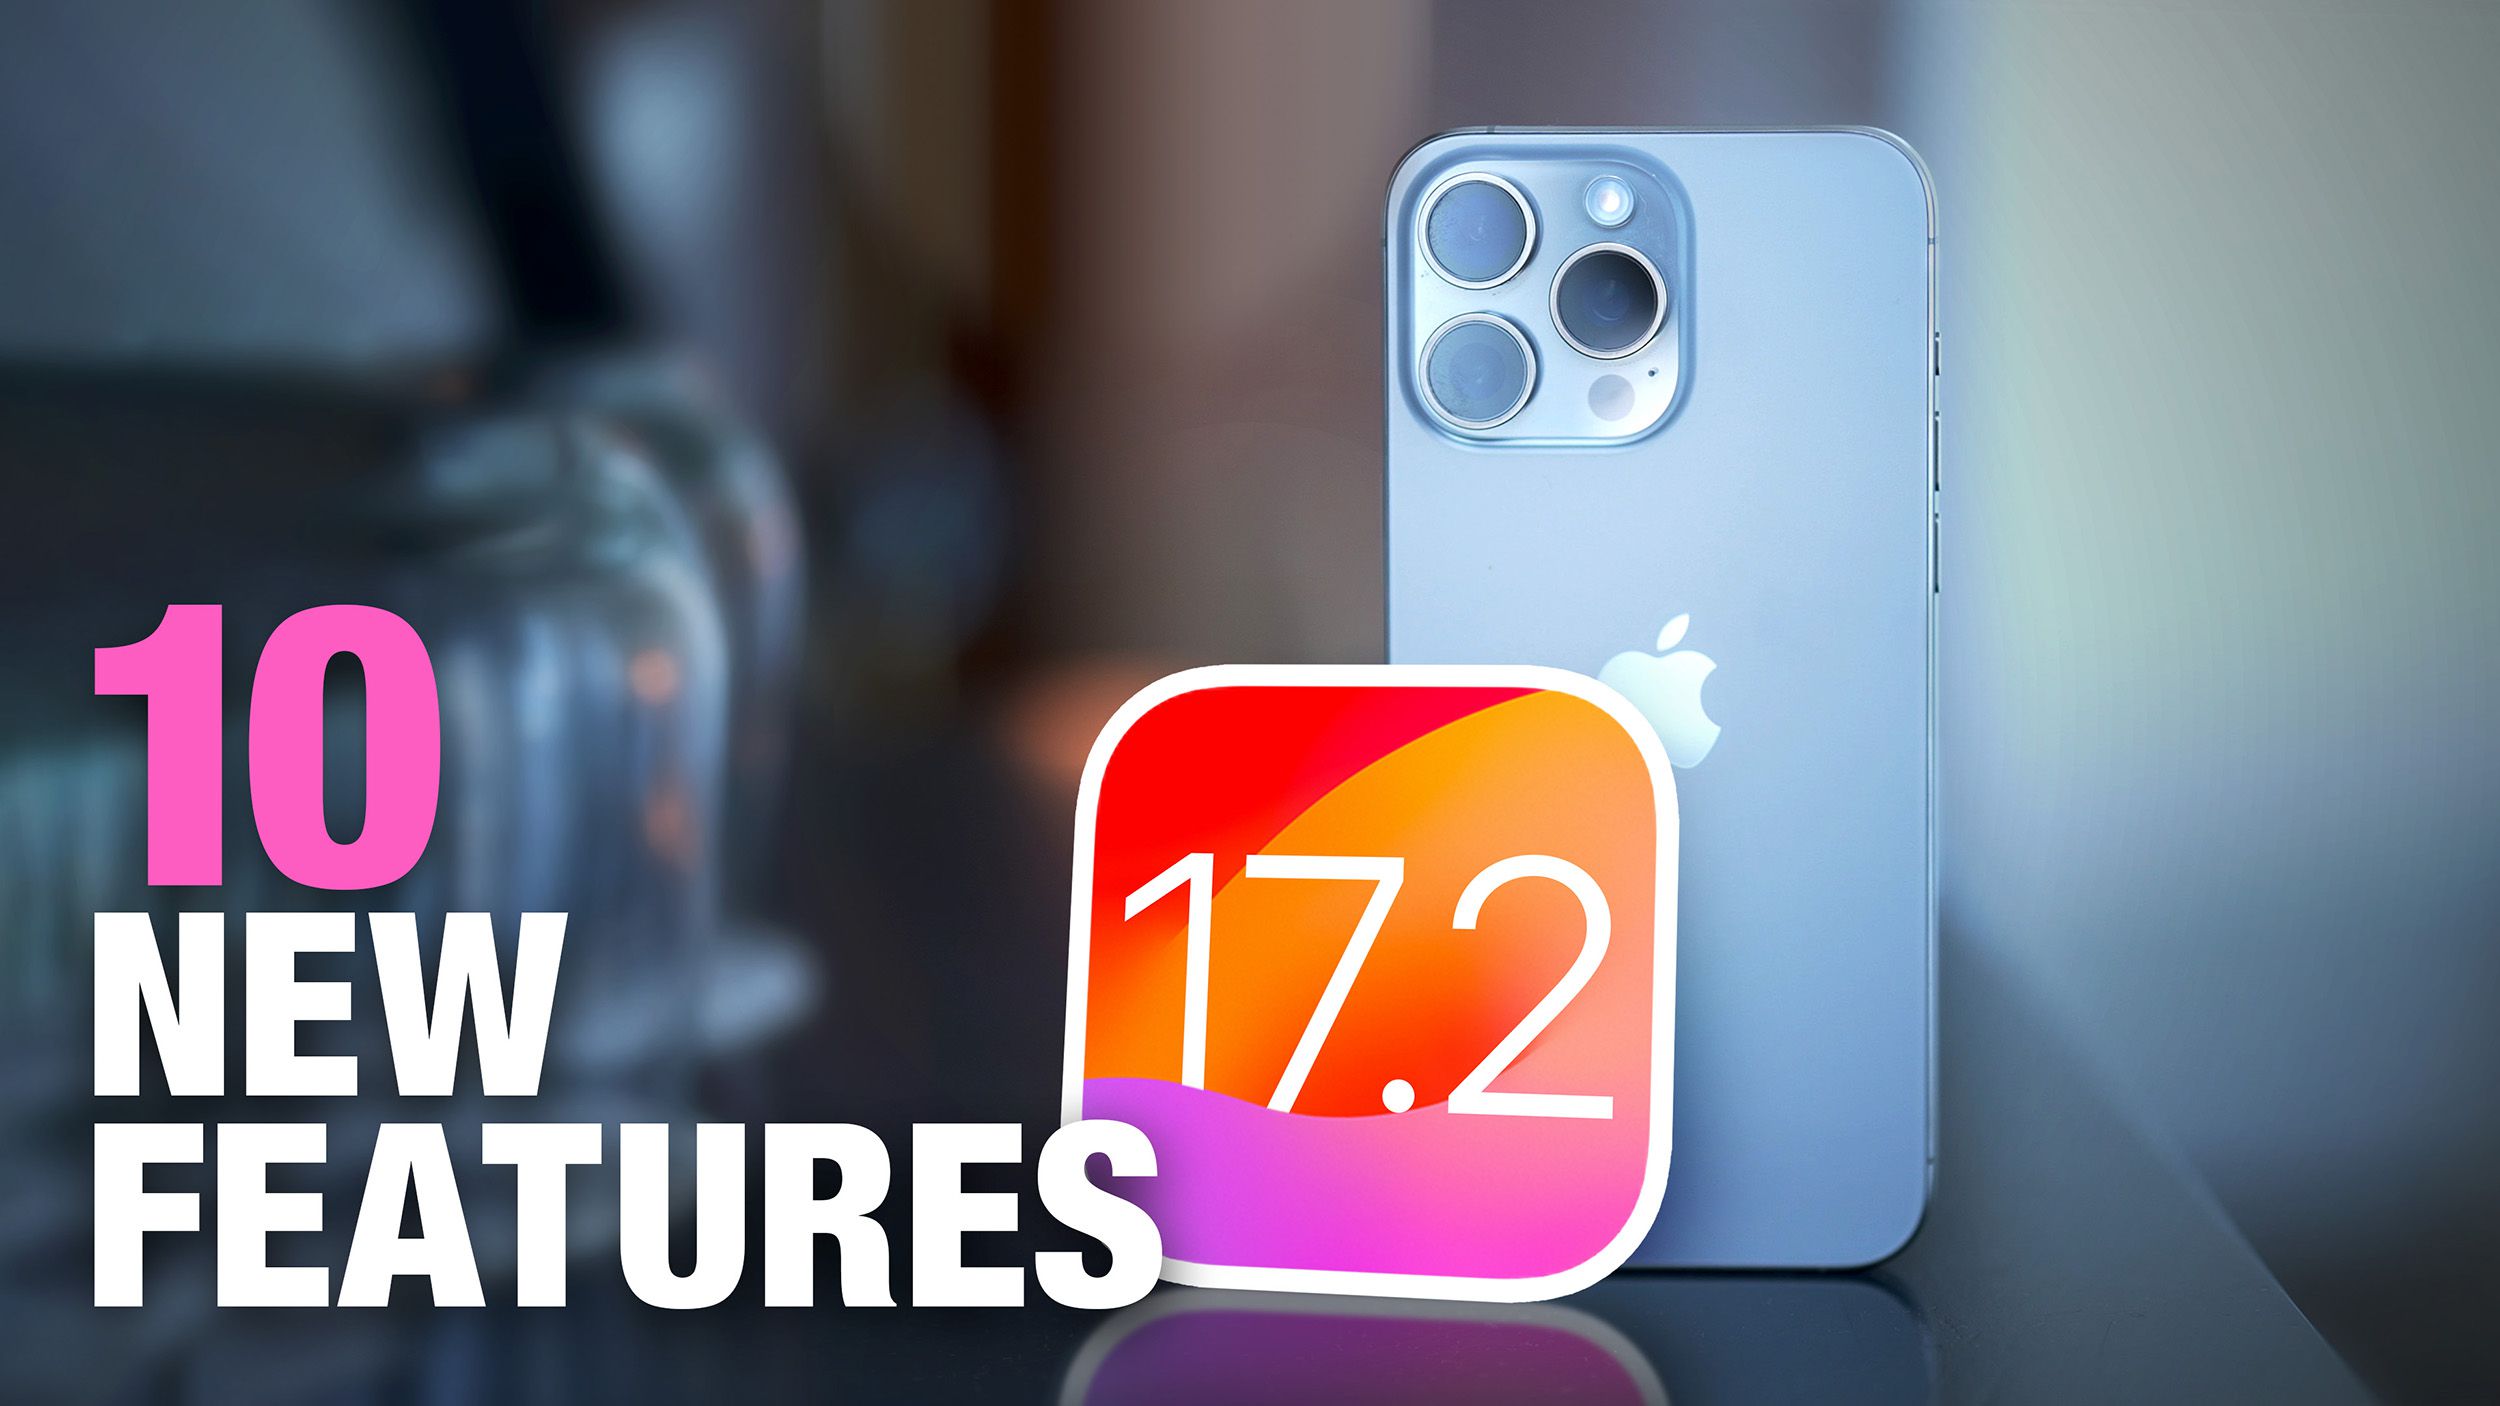 iOS 17.2 llegará más adelante este año con estas 10 nuevas características para iPhone.